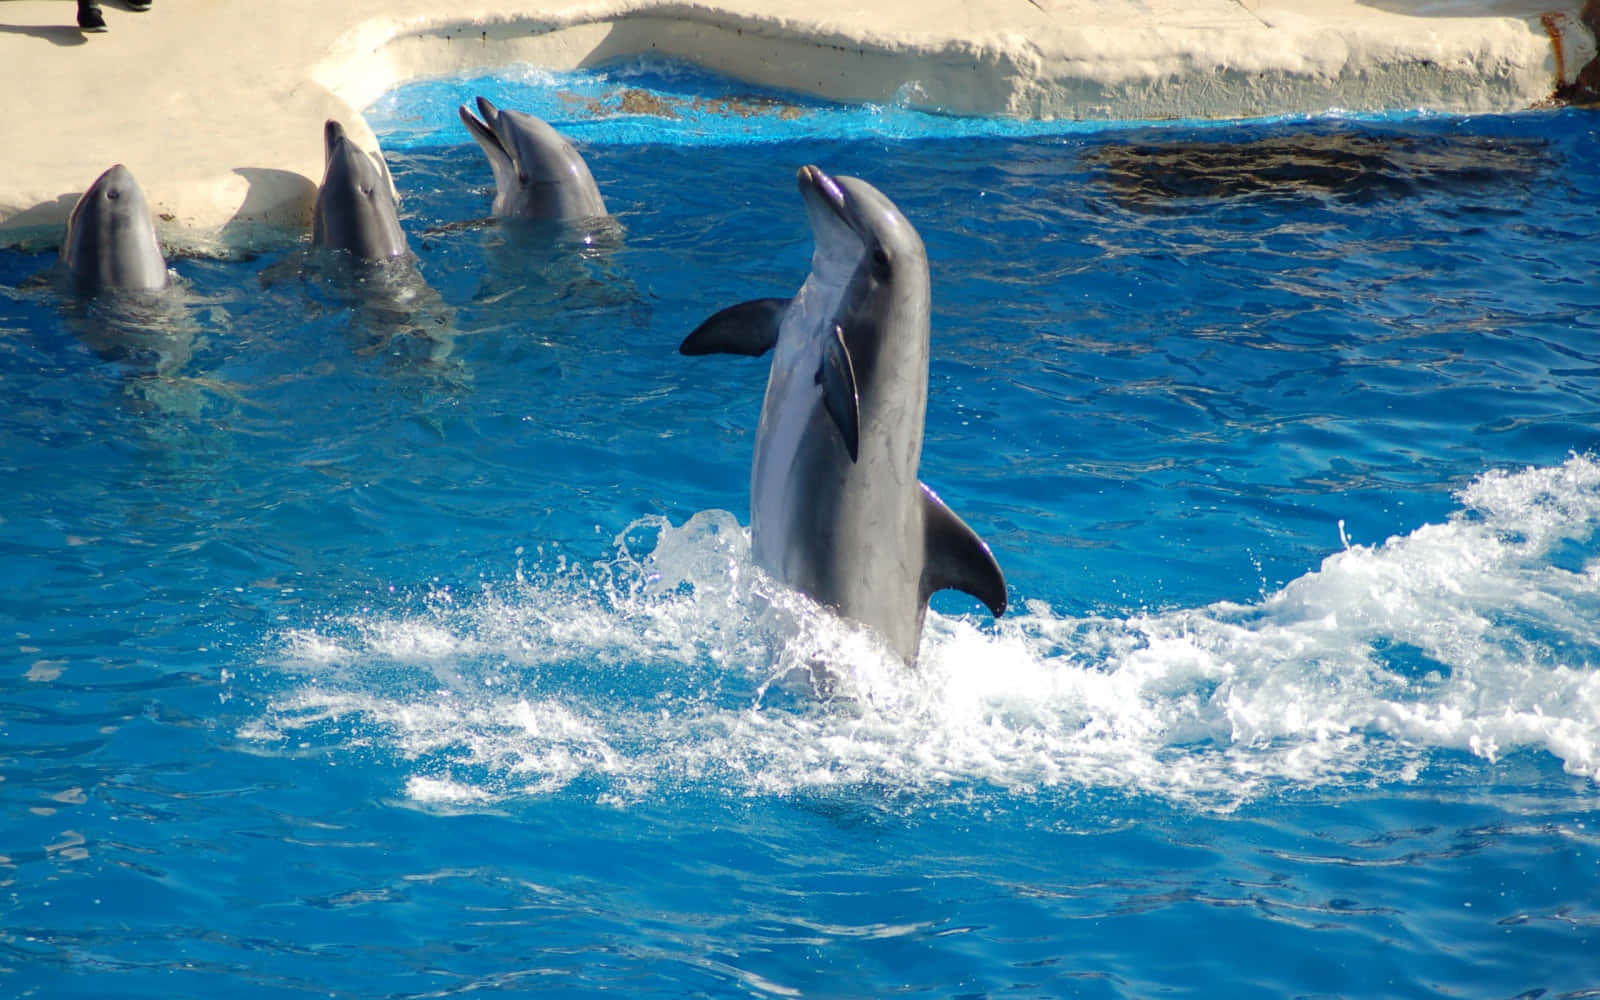 Einegruppe Von Delfinen Gleitet Durch Das Kristallklare Wasser Der Karibischen See.